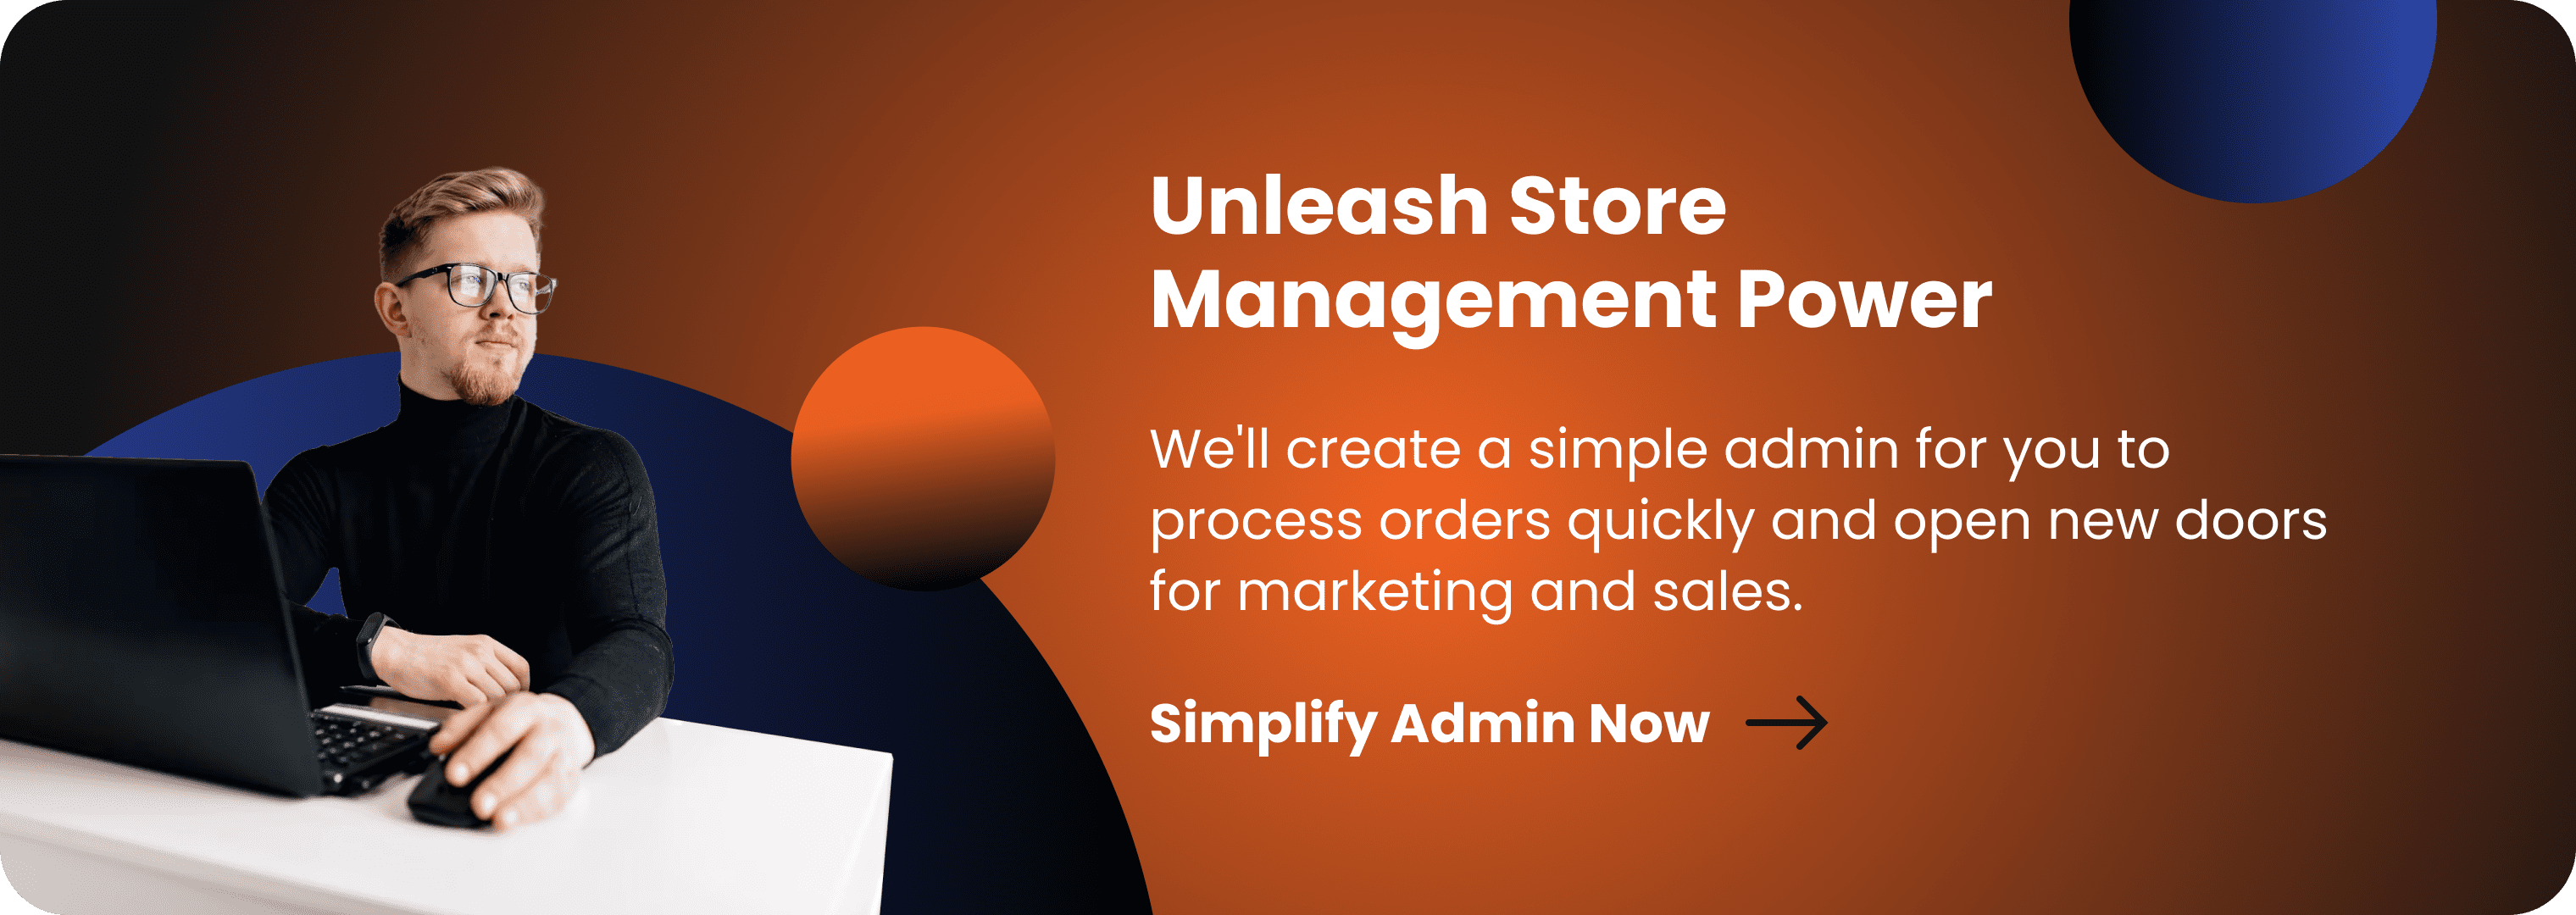 Management - Unleash Store Management Power